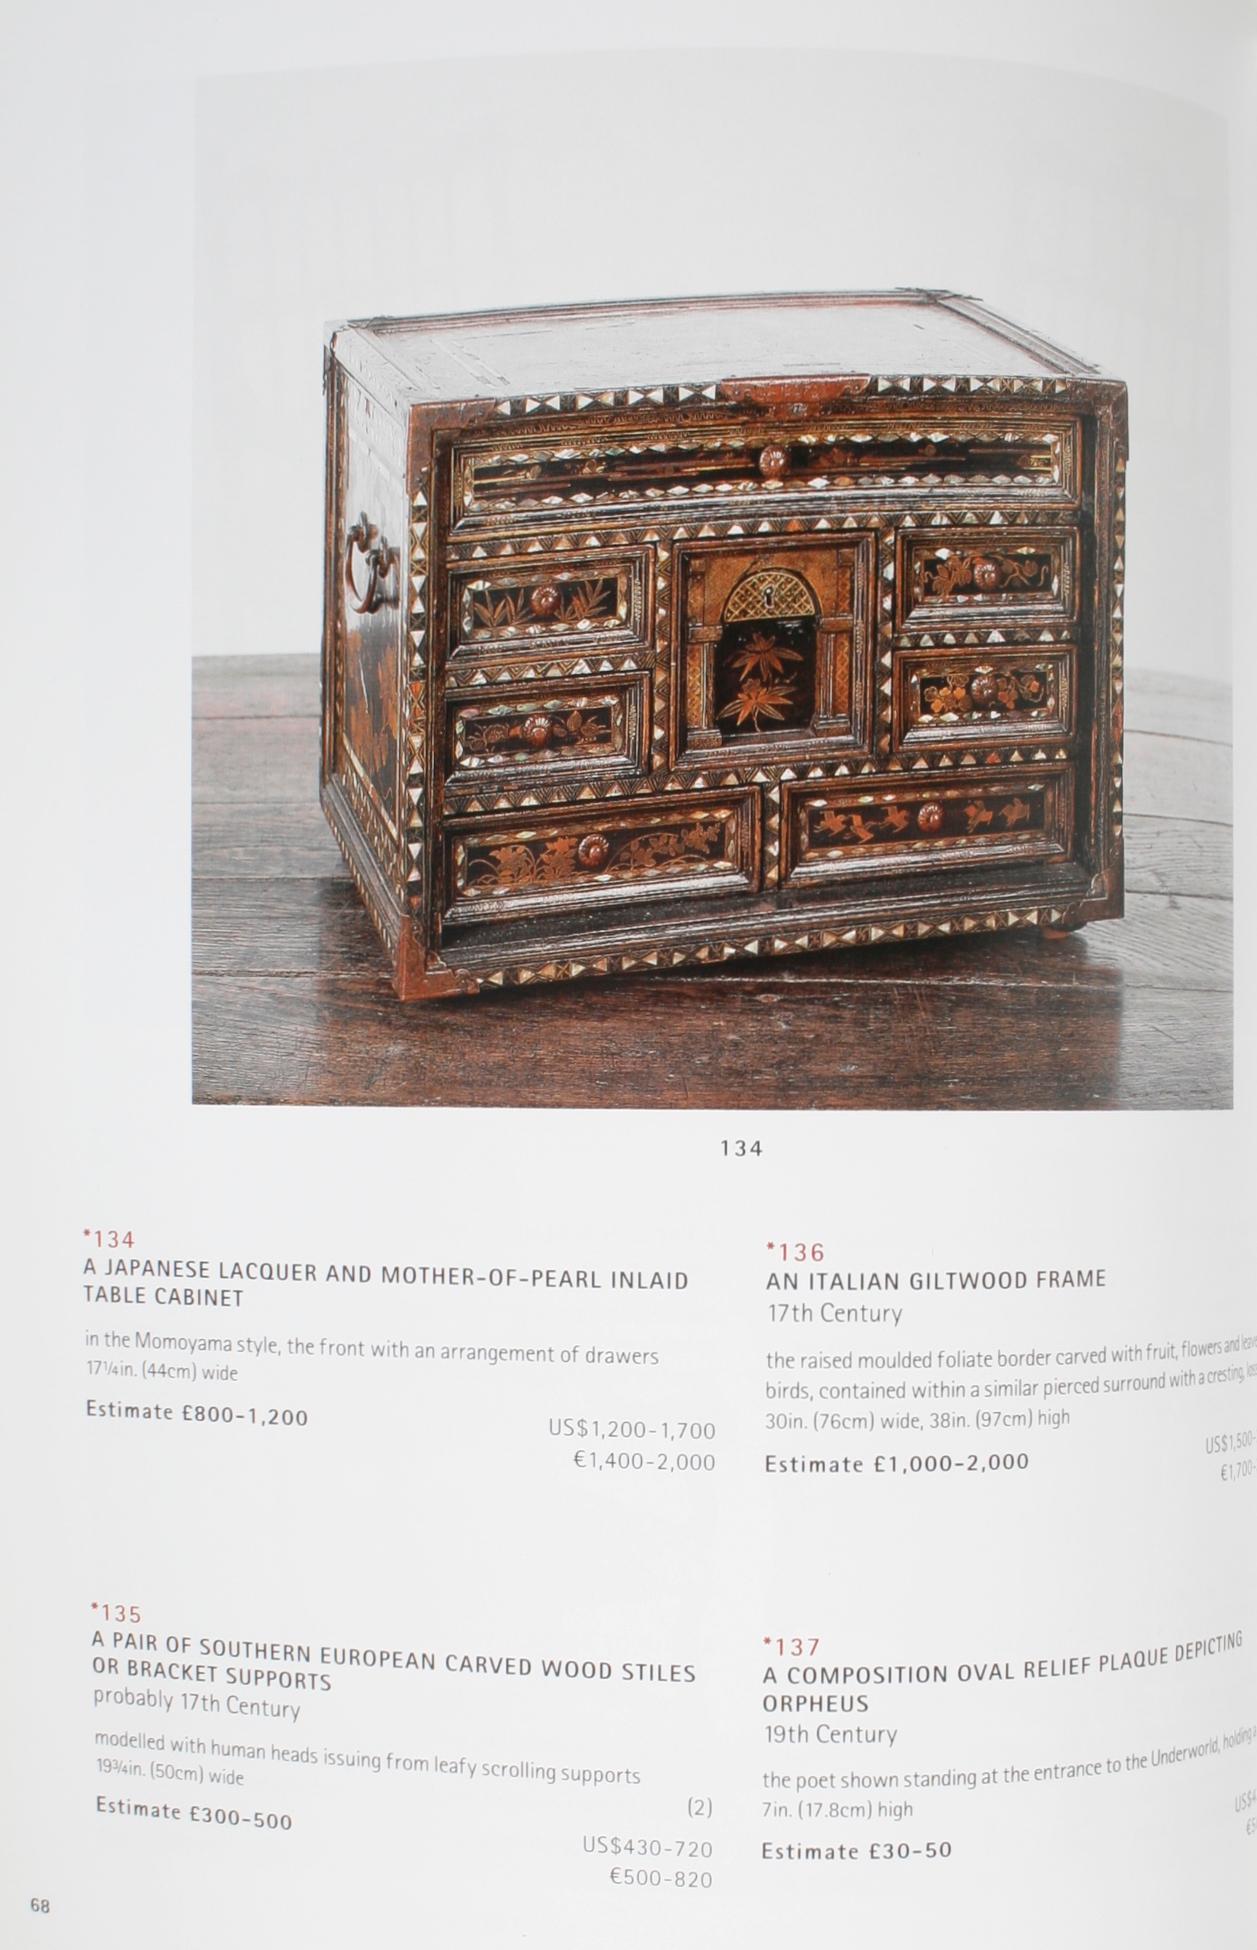 Christie's Works of Art Form Chateau Les Tours De Lenvège Auction Catalog 4/2002 3